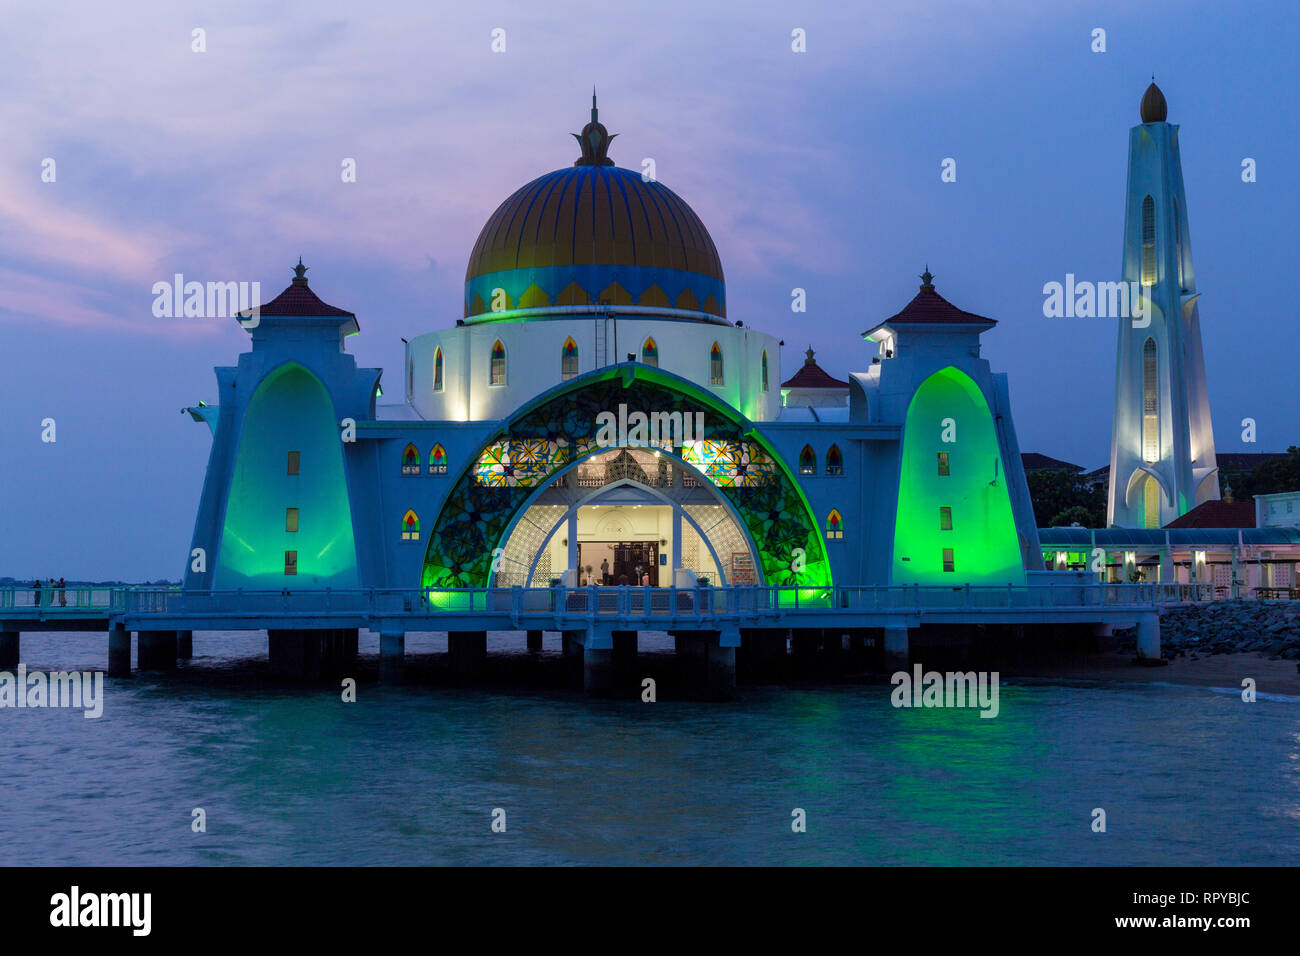 Melaka Straße-Moschee Masjid Selat, die Schwimmende Moschee, am frühen Abend, Melaka, Malaysia. Stockfoto